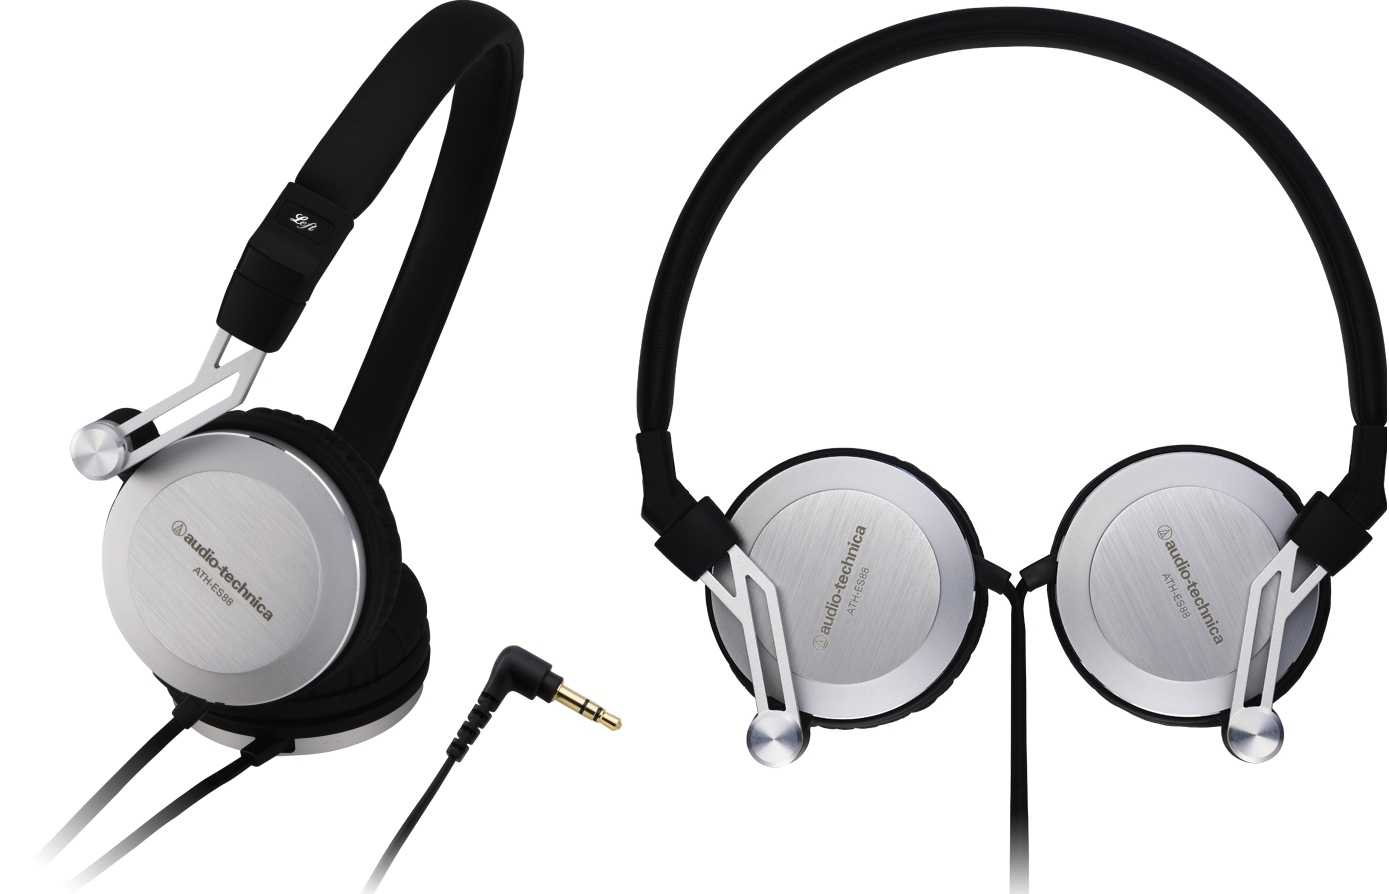 Audio-technica ath-es88 купить по акционной цене , отзывы и обзоры.